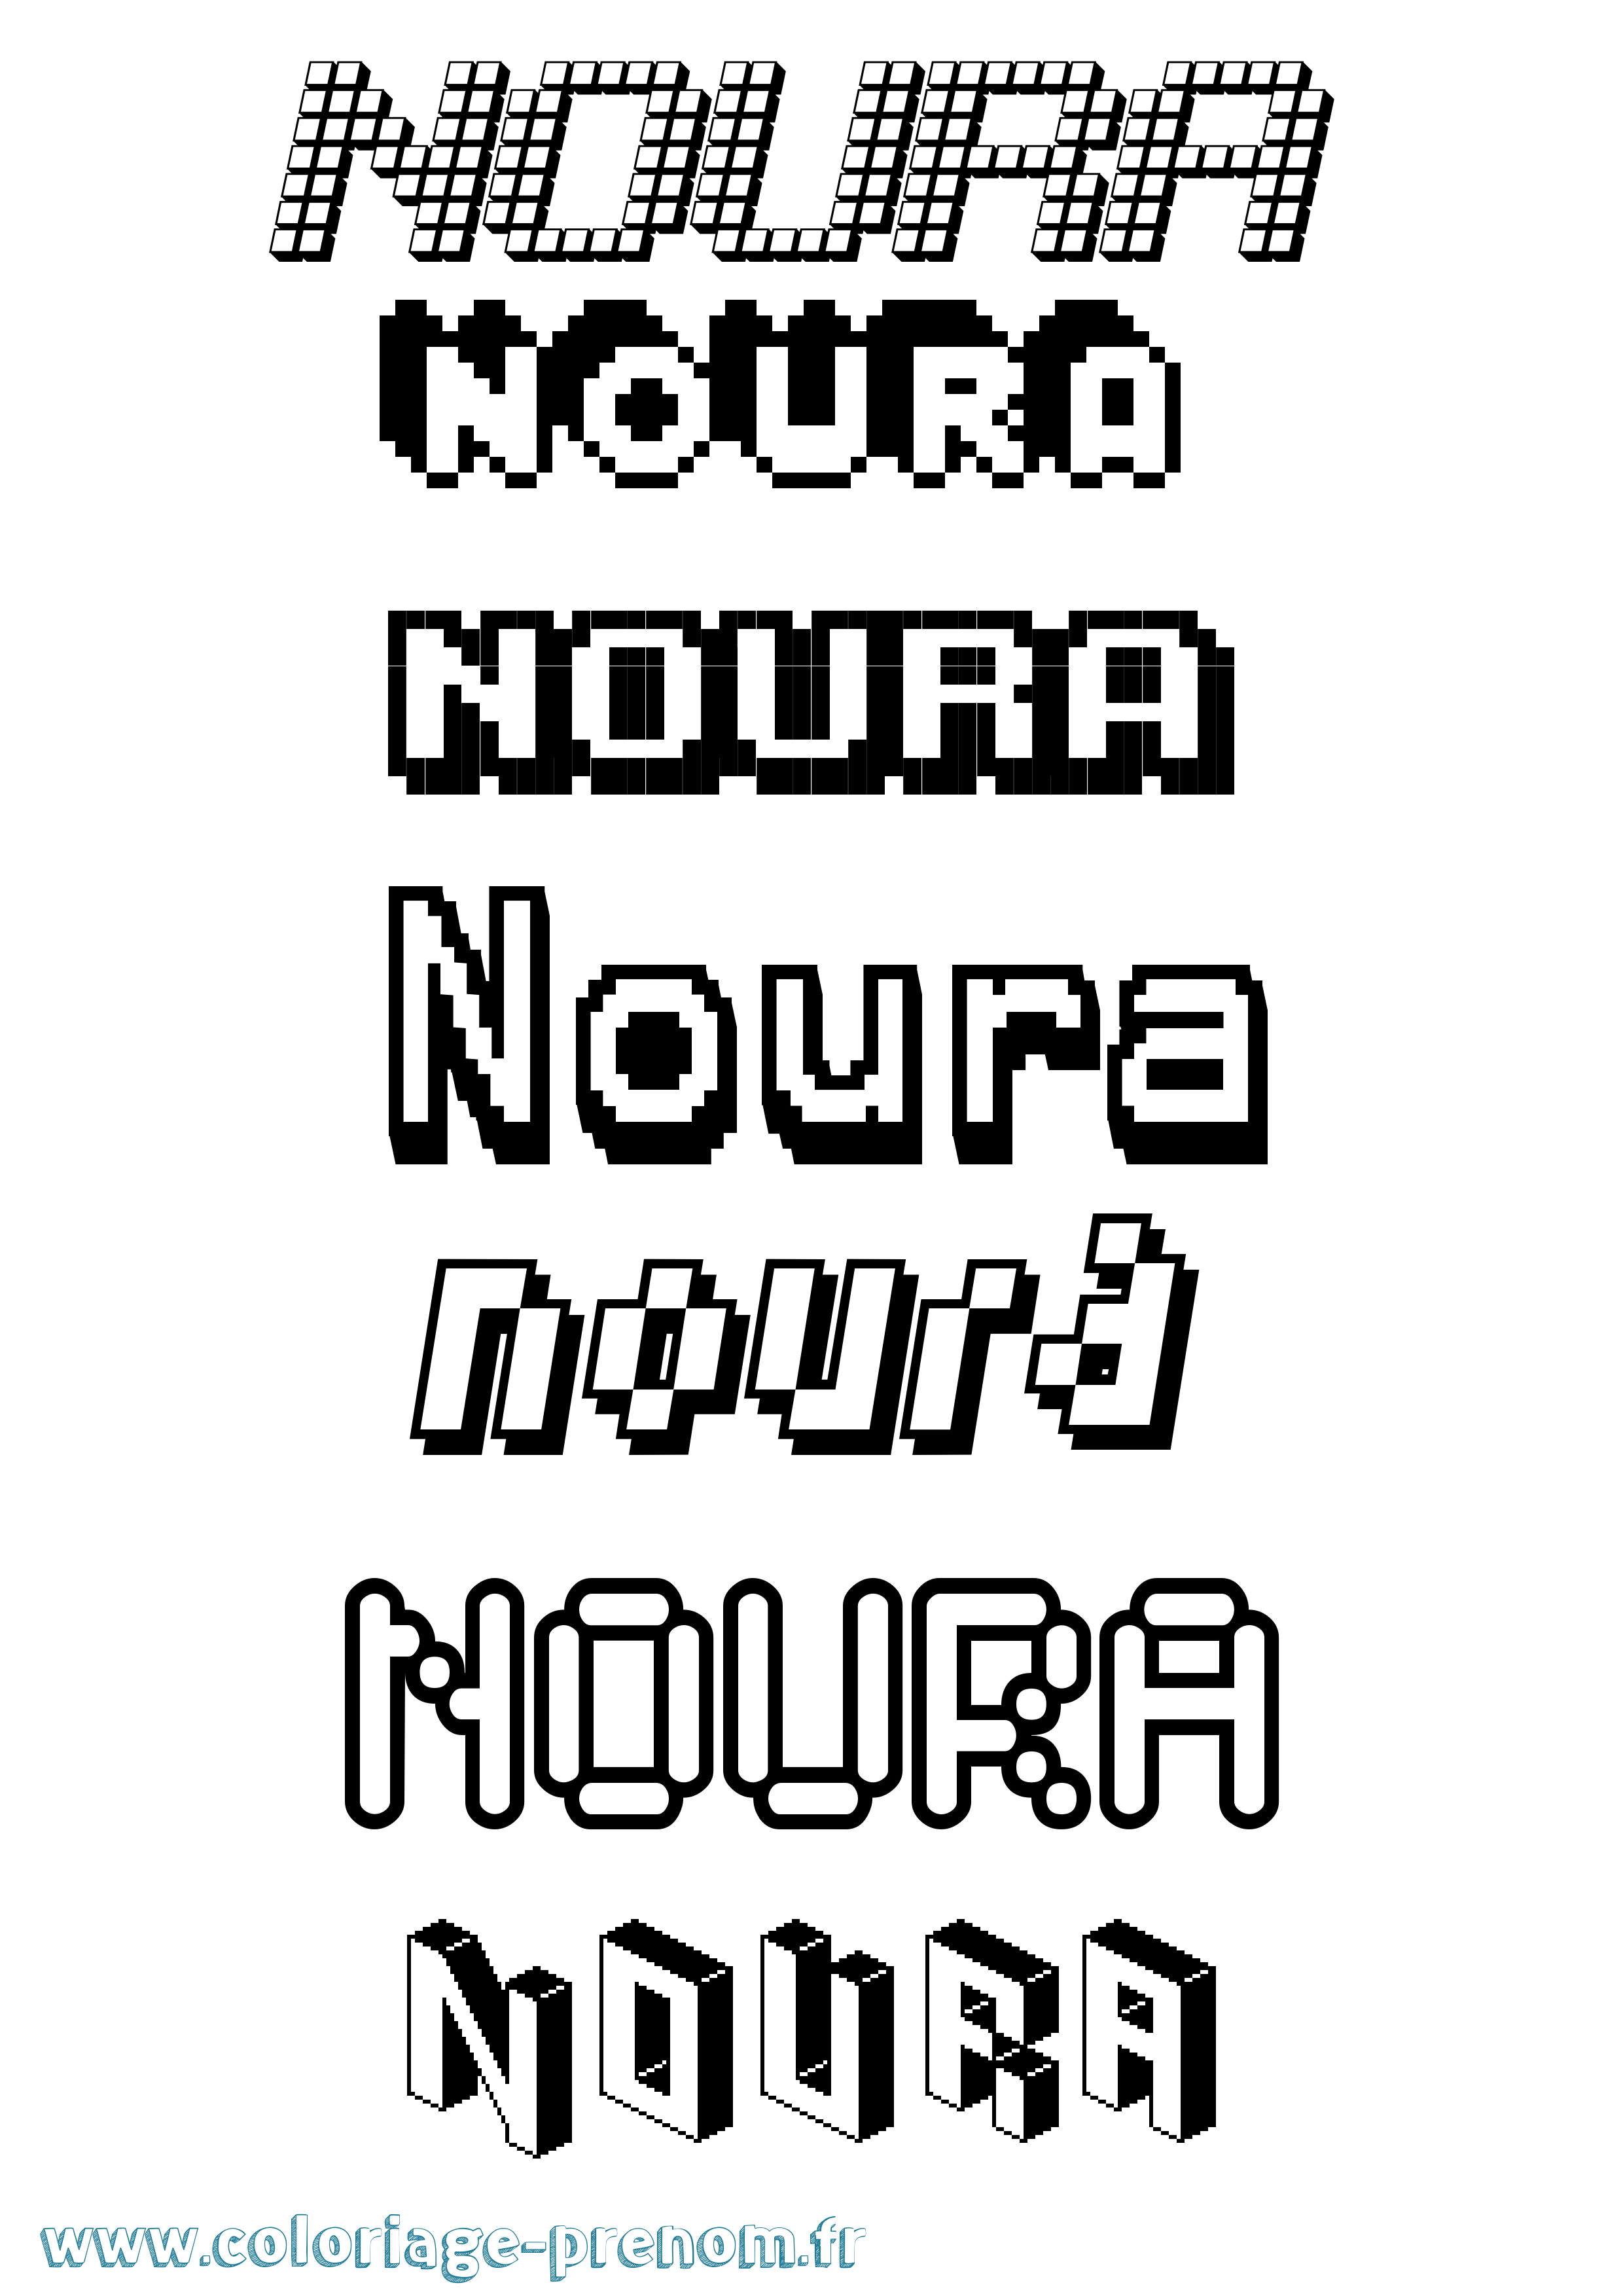 Coloriage prénom Noura